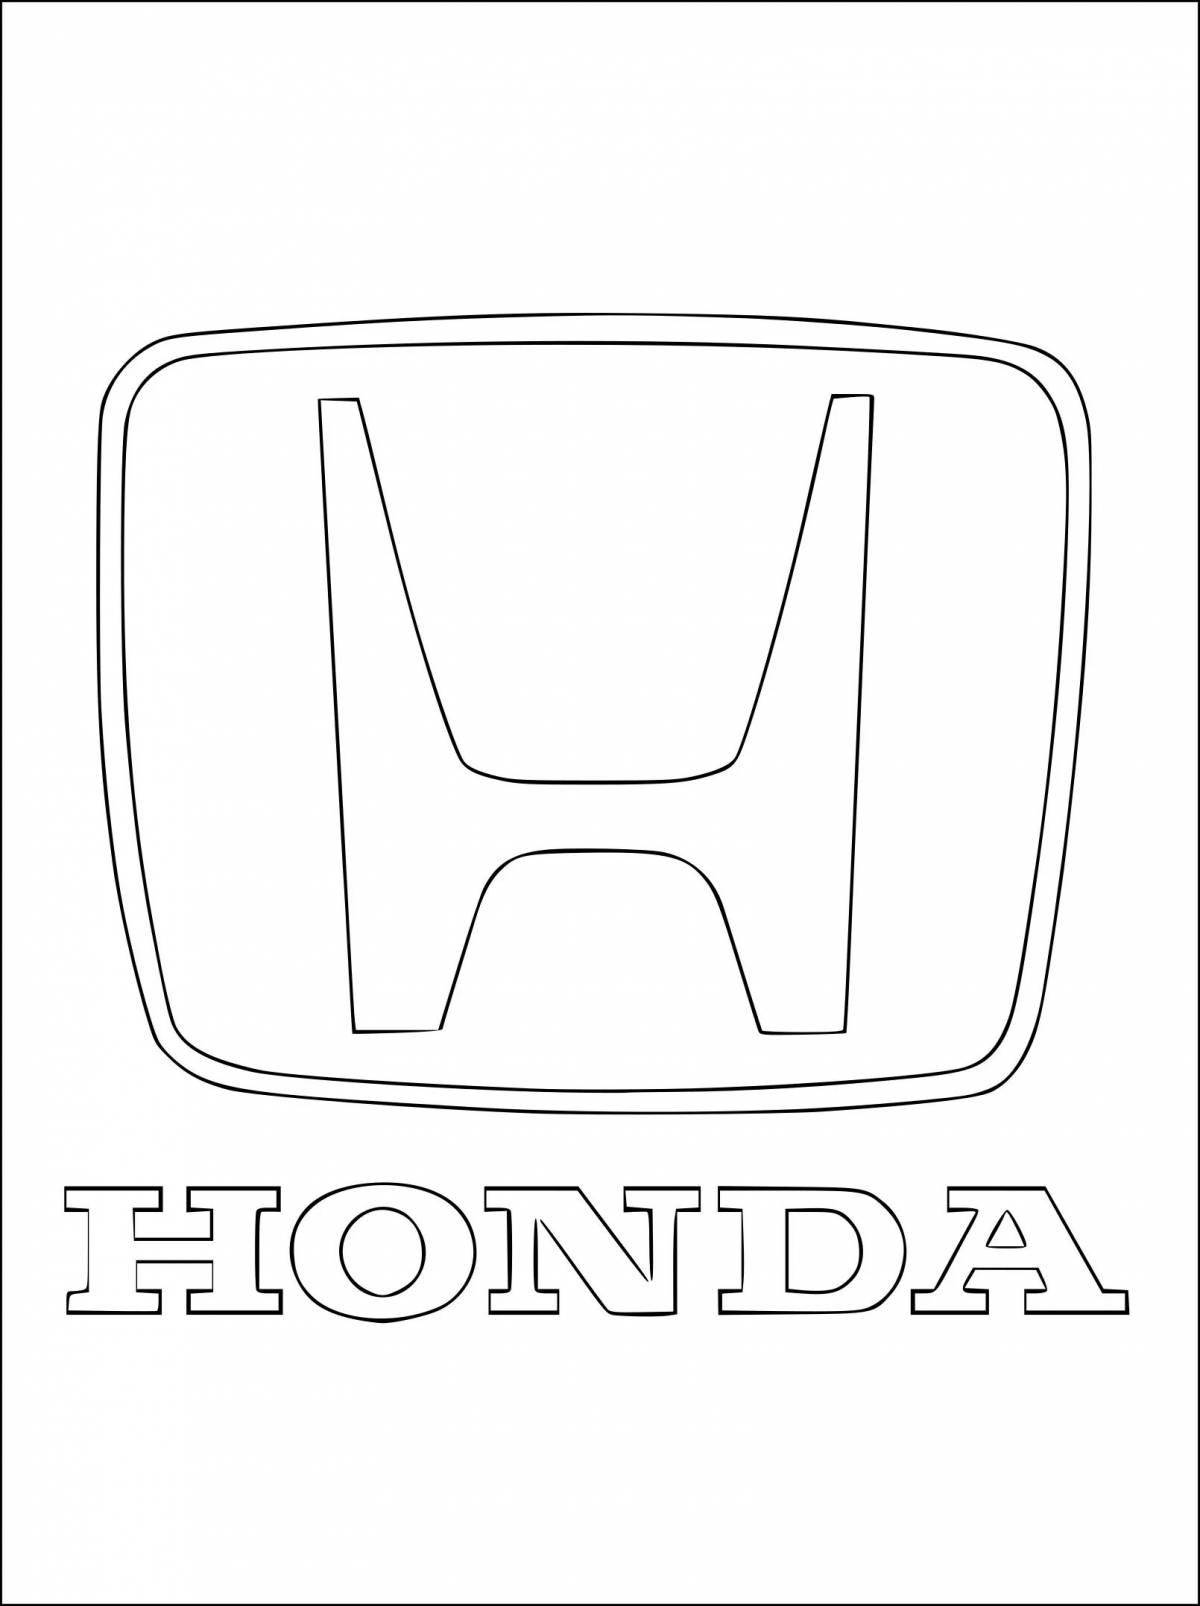 Elegant car logo coloring page